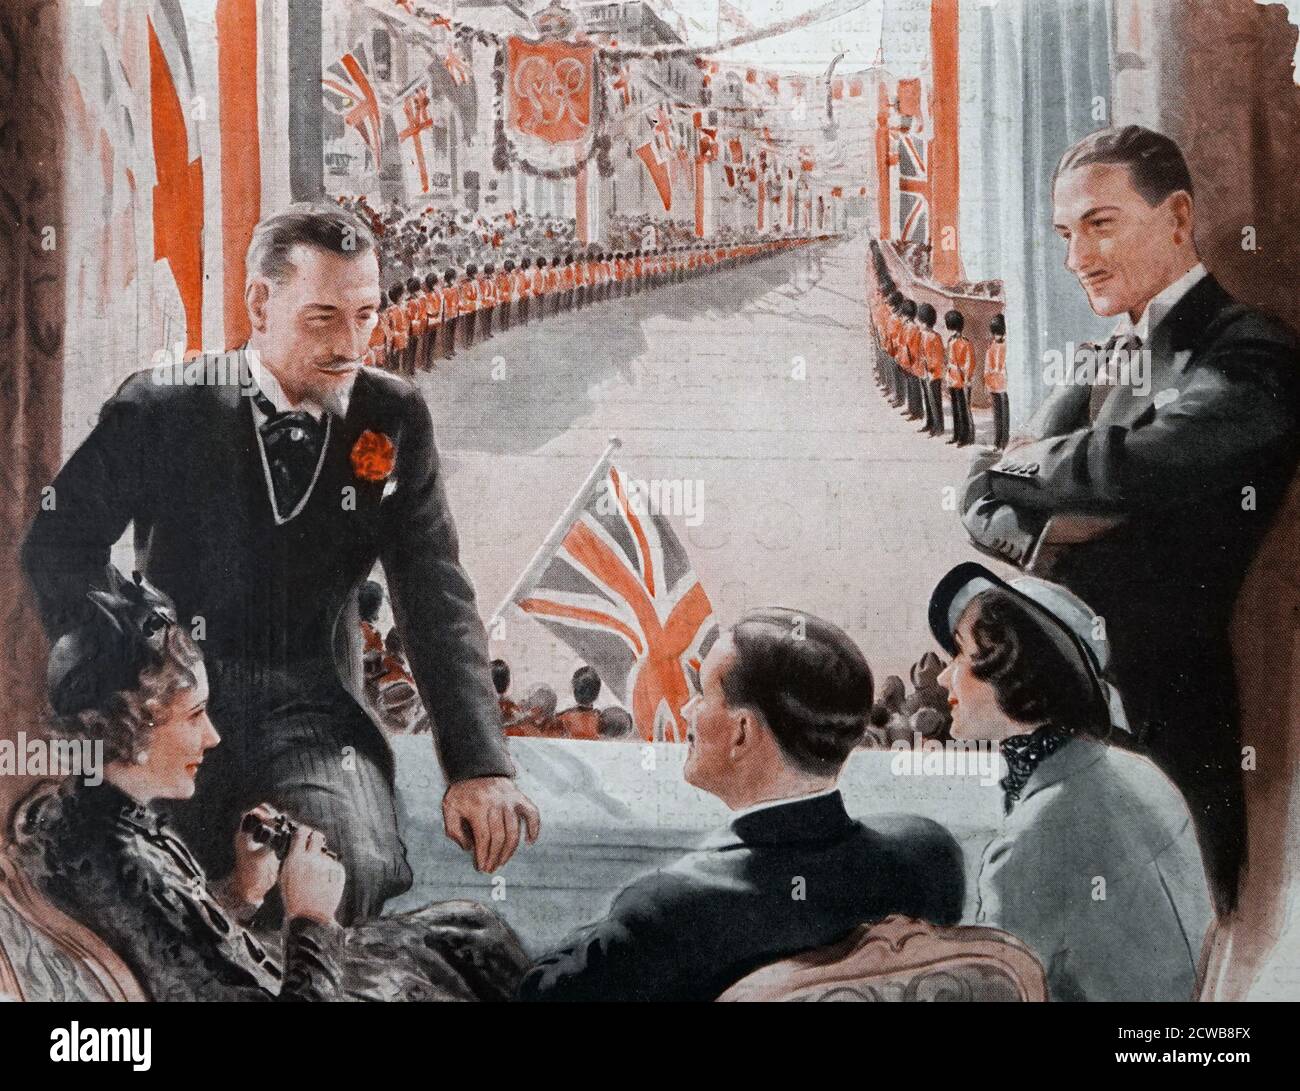 Abbildung zeigt Zuschauer beim Betrachten der Feierlichkeiten zur Krönung des britischen Königs George VI. Von 1937 Stockfoto